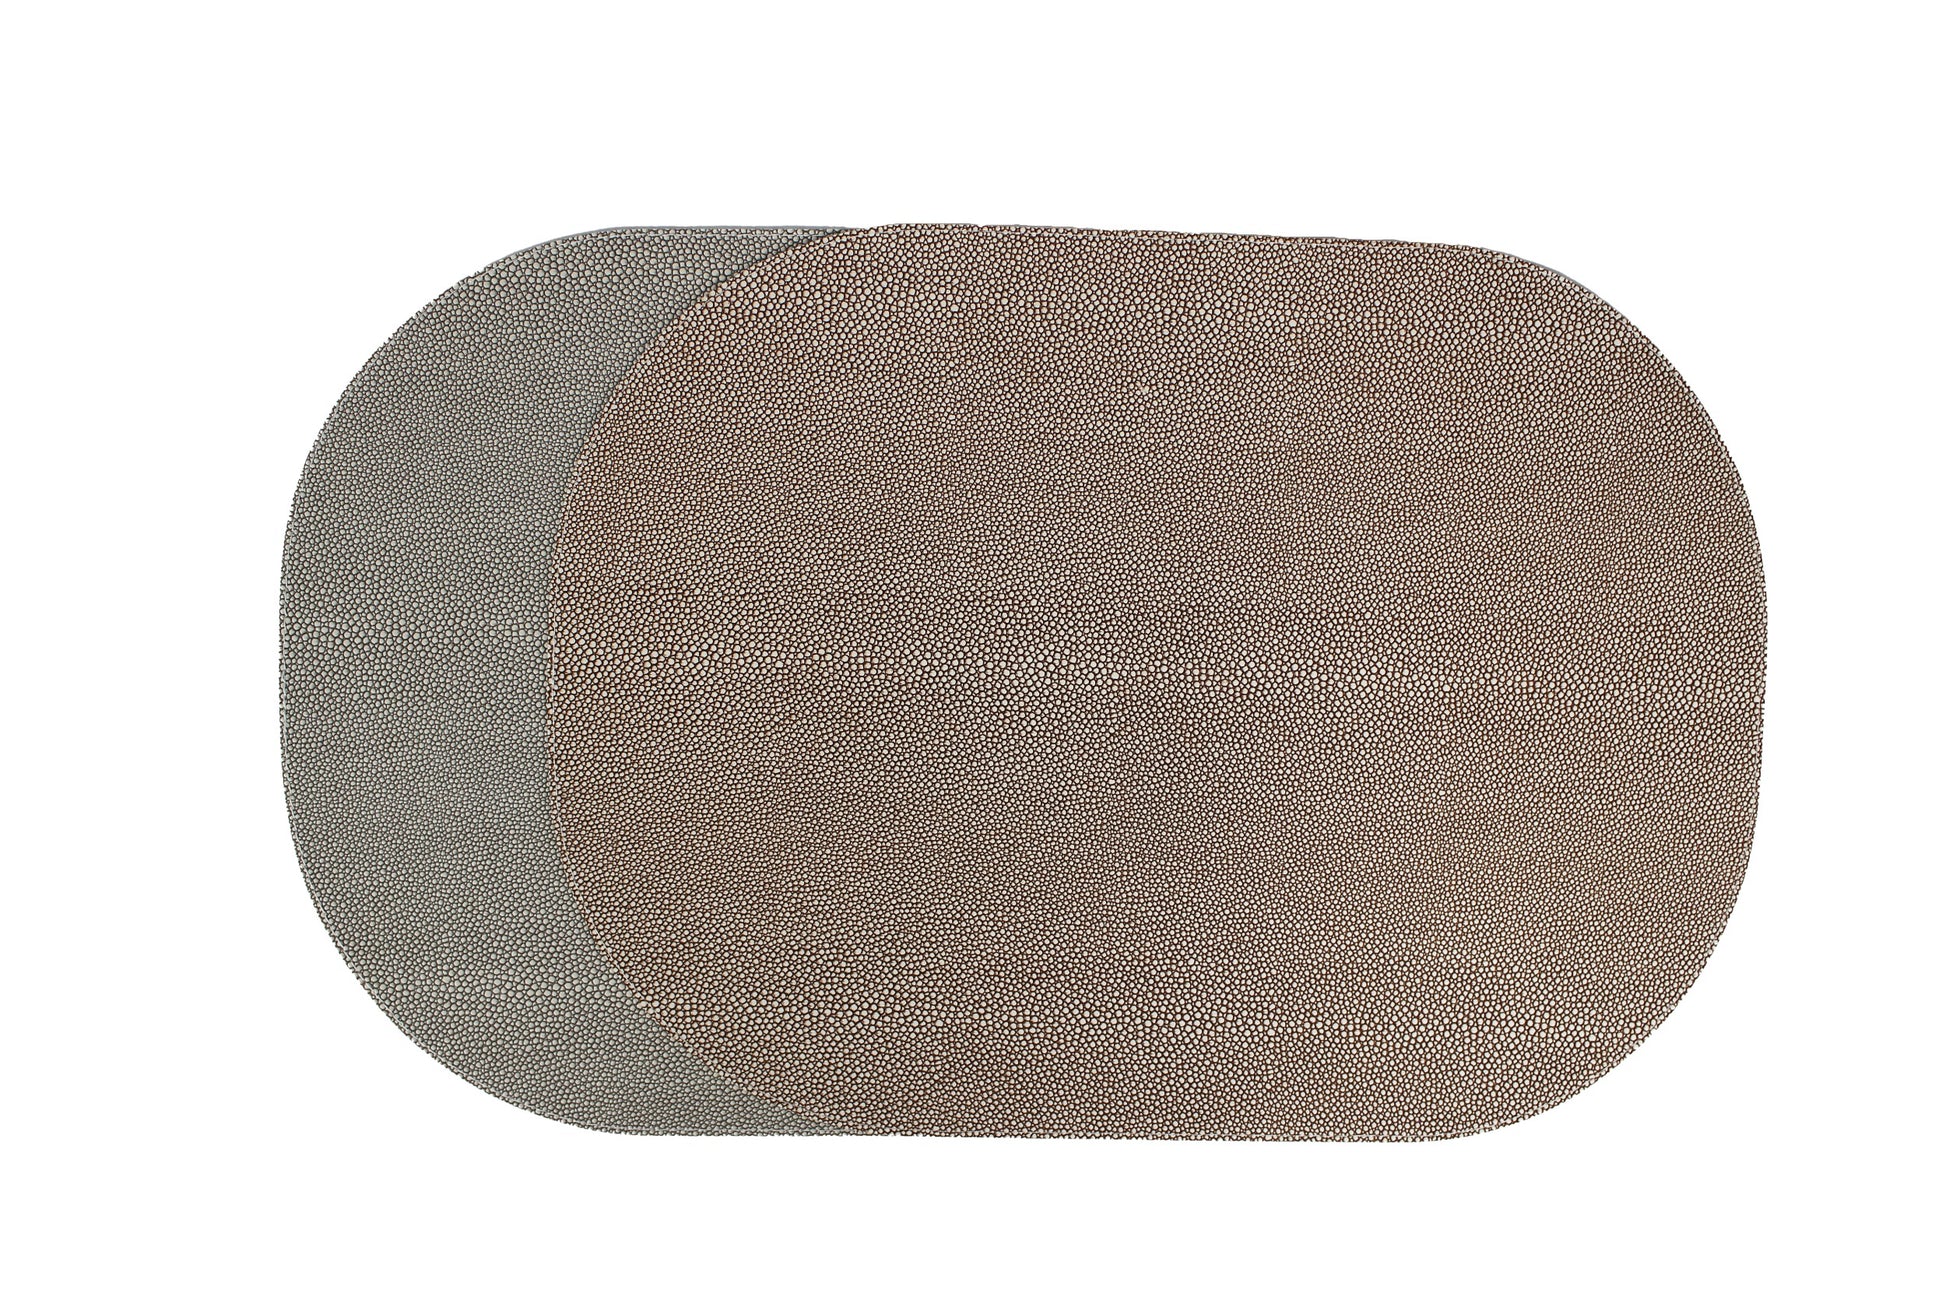 ovale Tischsets zweifarbig braun grau in Rochenhaut Leder Optik